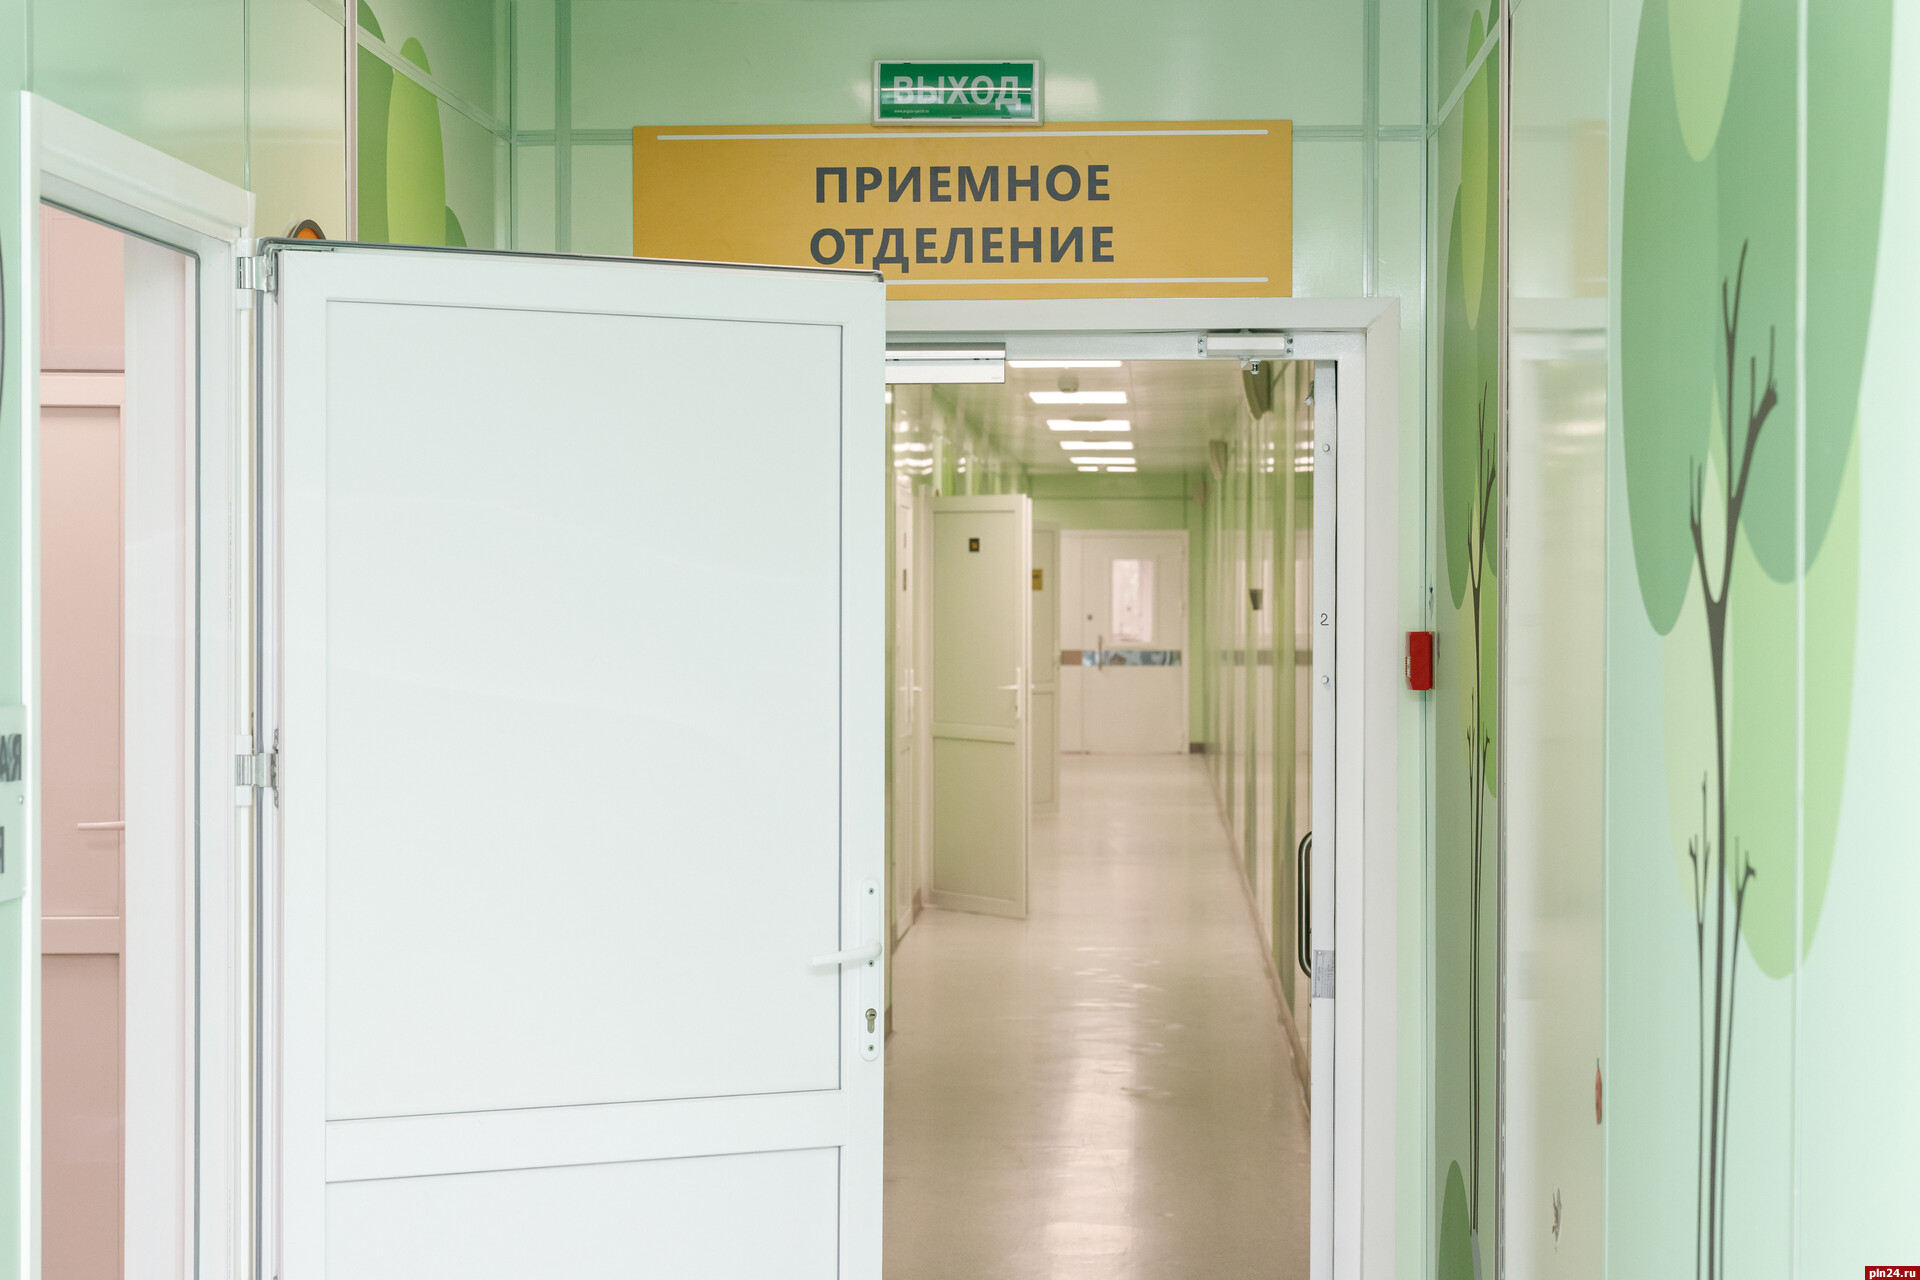 22 новых случая заражения коронавирусом выявили в Псковской области